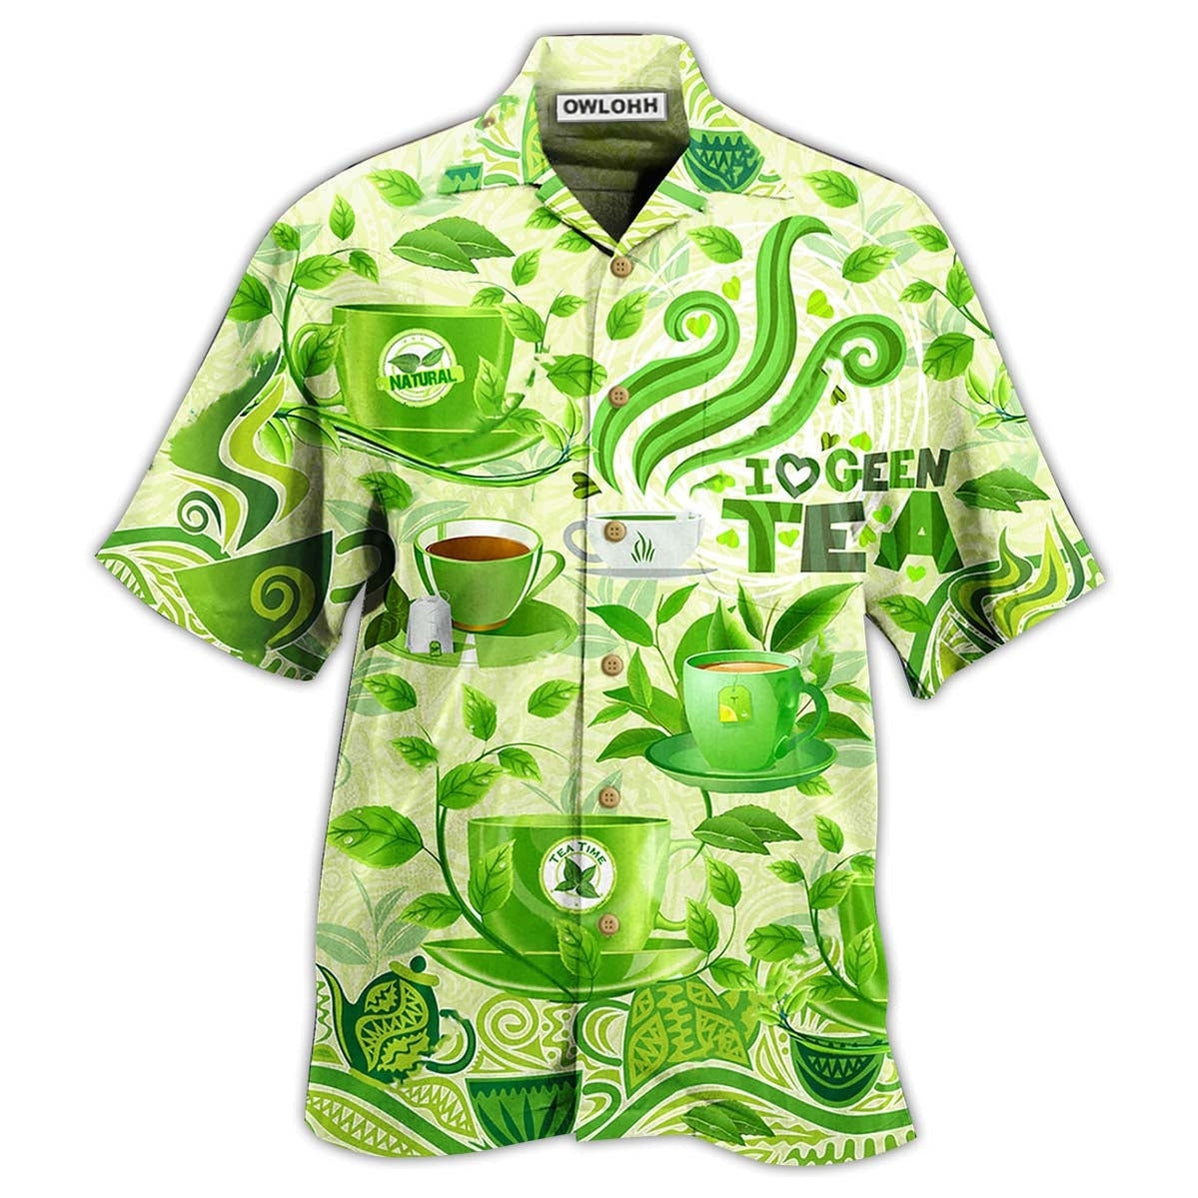 Hawaiian Shirt / Adults / S Tea Love Green Tea - Hawaiian Shirt - Owls Matrix LTD